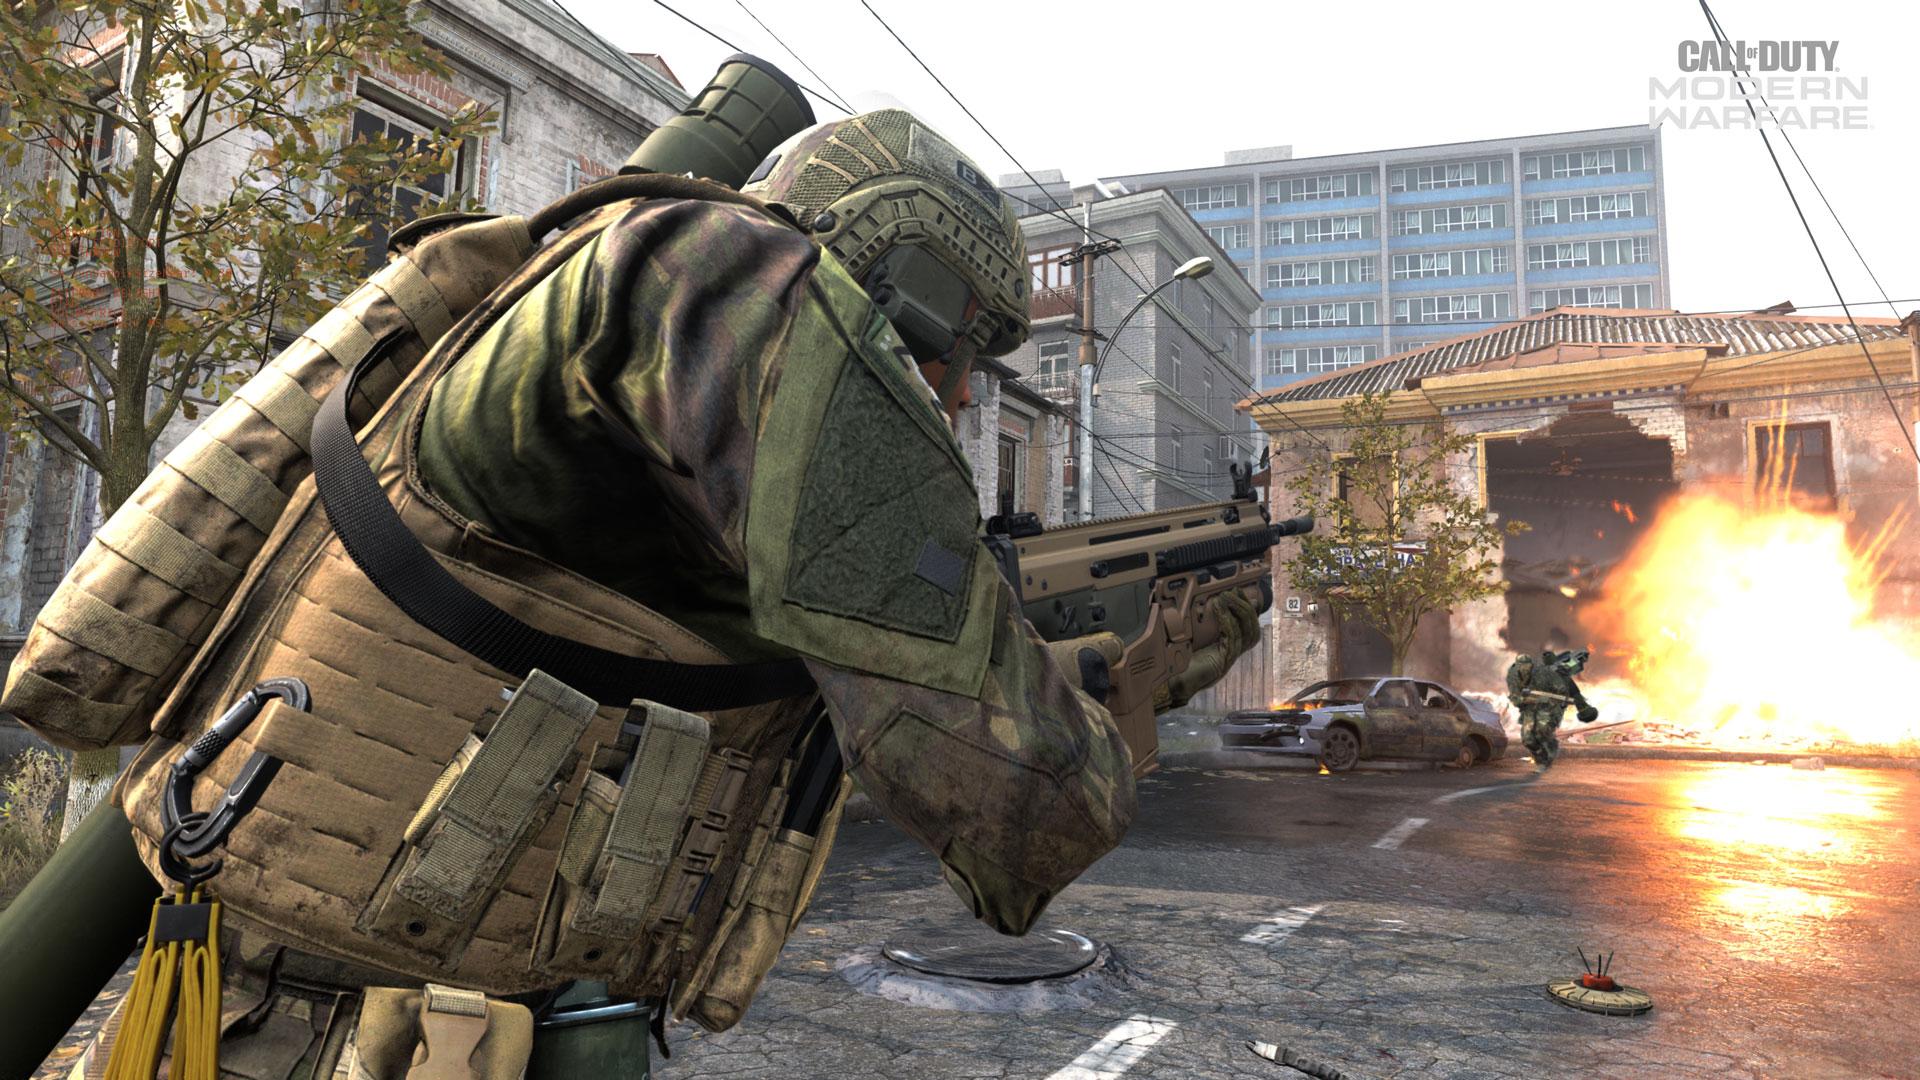 Call of Duty website leaks Modern Warfare Season 2 details early